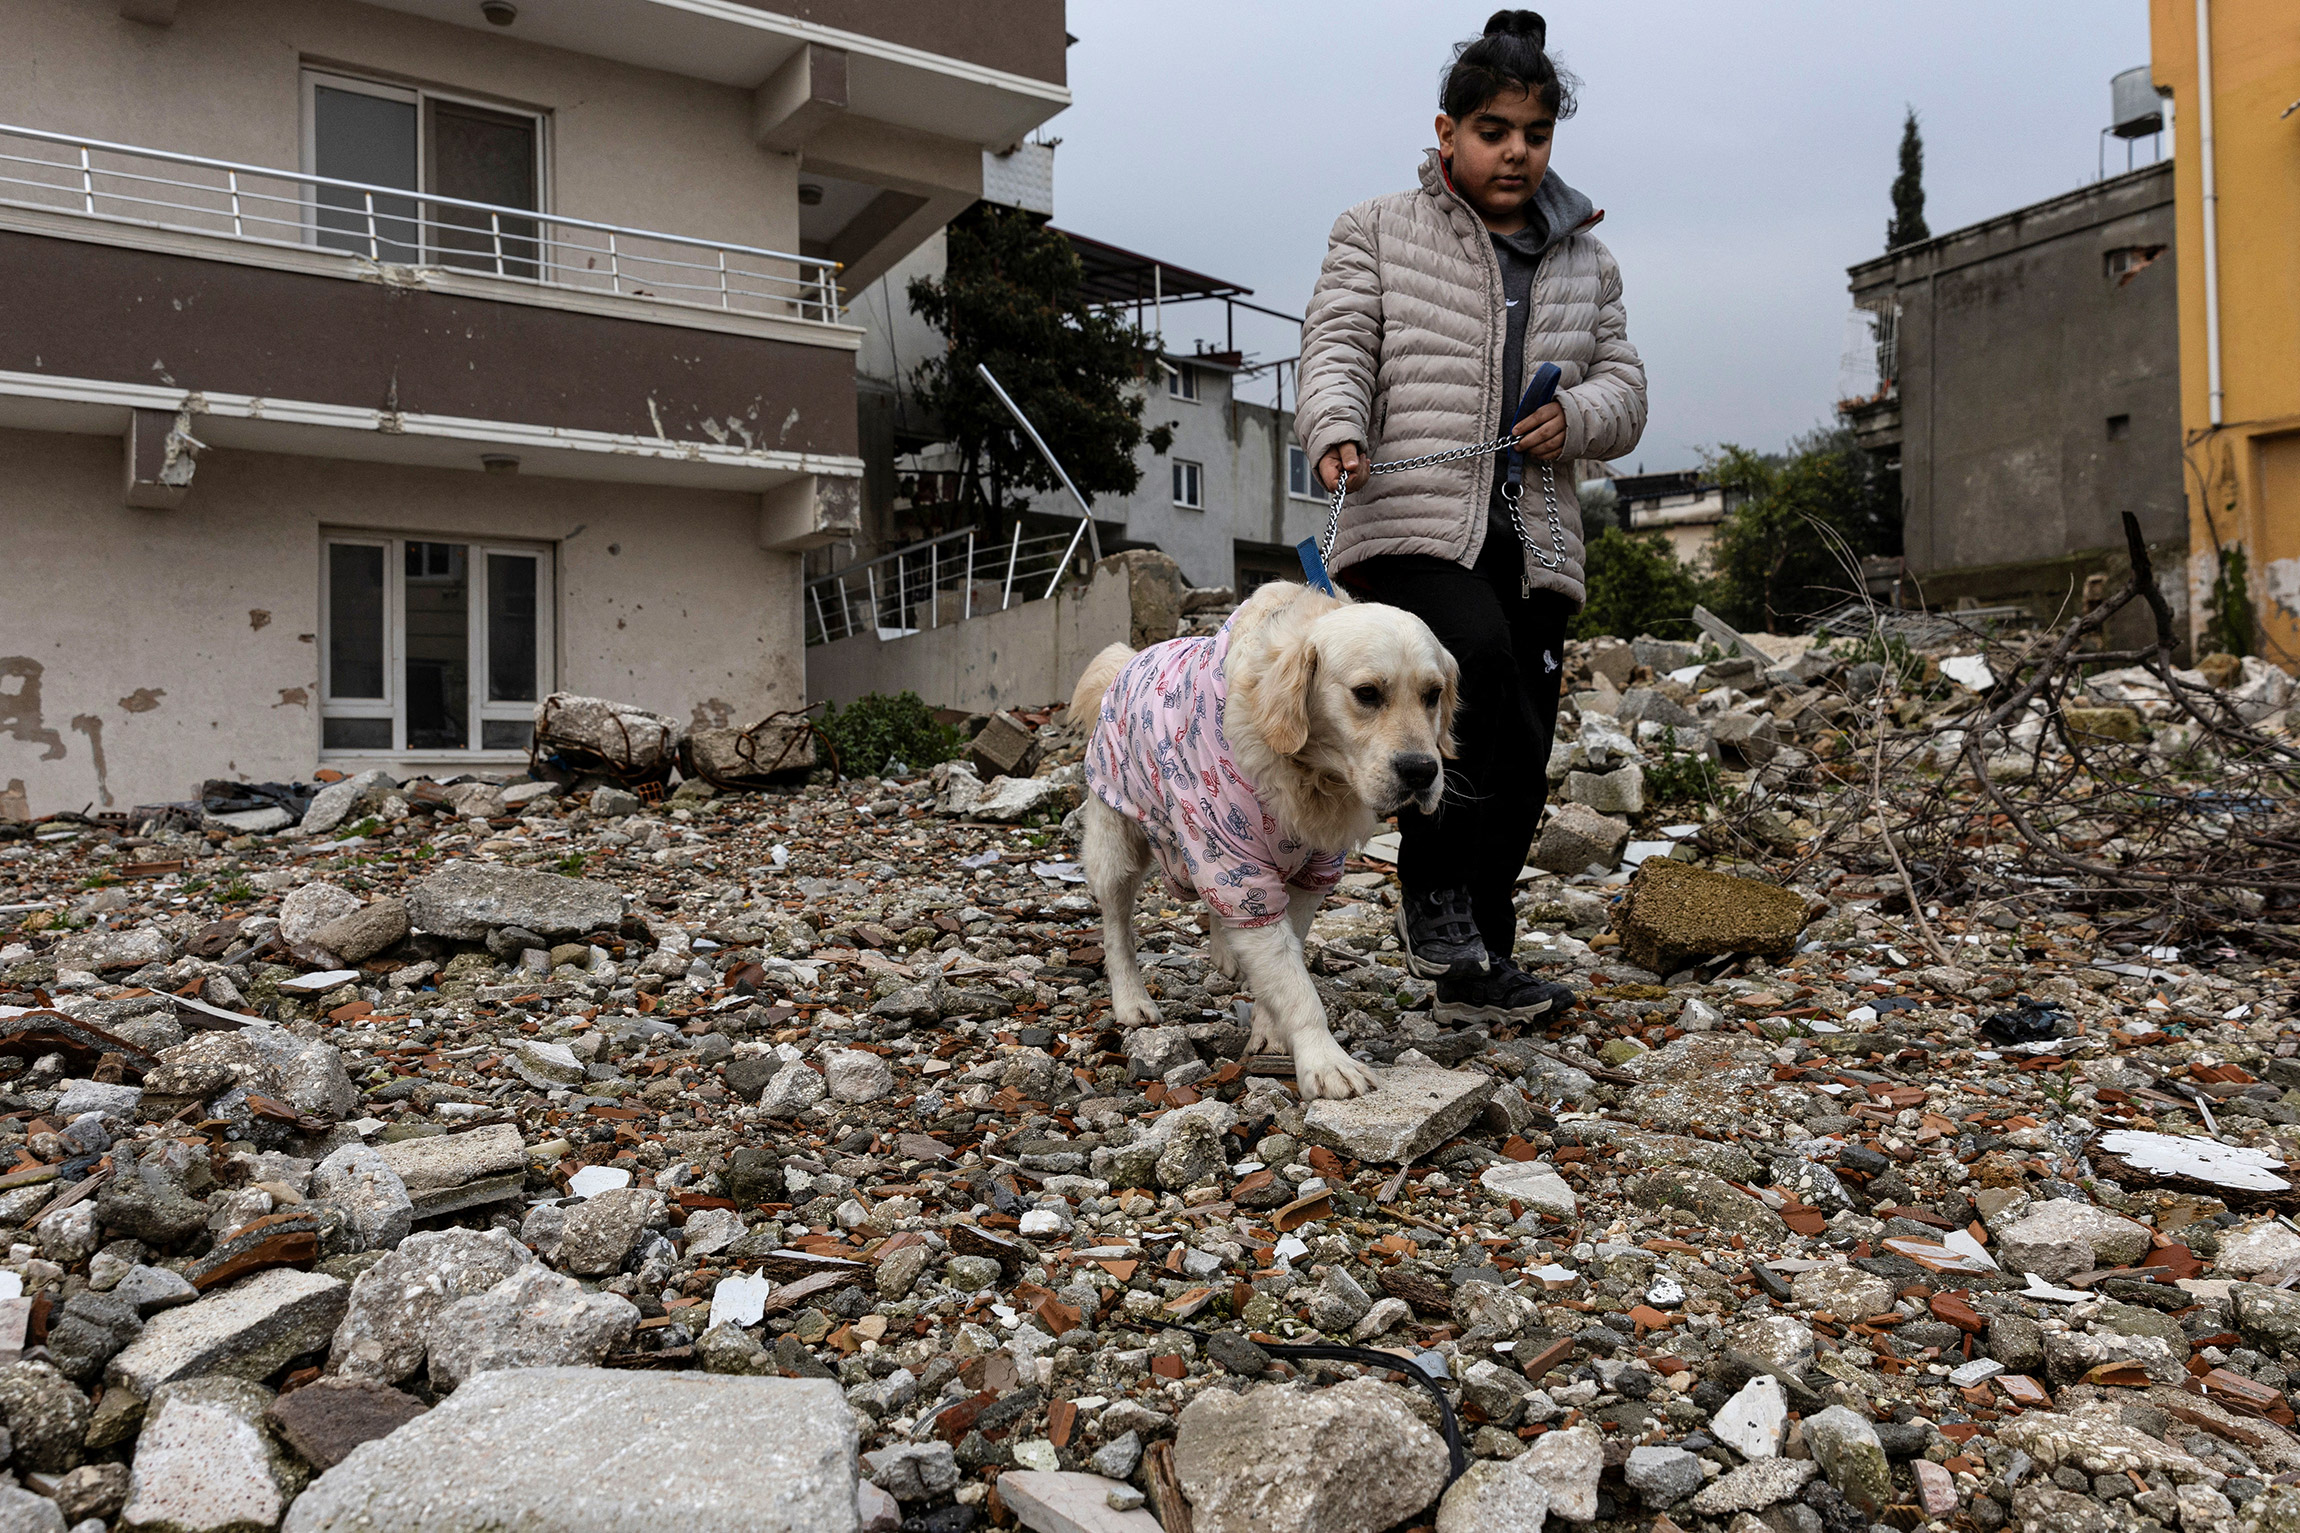 Чинара Тамгучук гуляет со своей собакой Буфи, которая была найдена под завалами пекарни через несколько дней после землетрясения, 5 февраля. Прежние владельцы собаки погибли в рухнувшем здании.